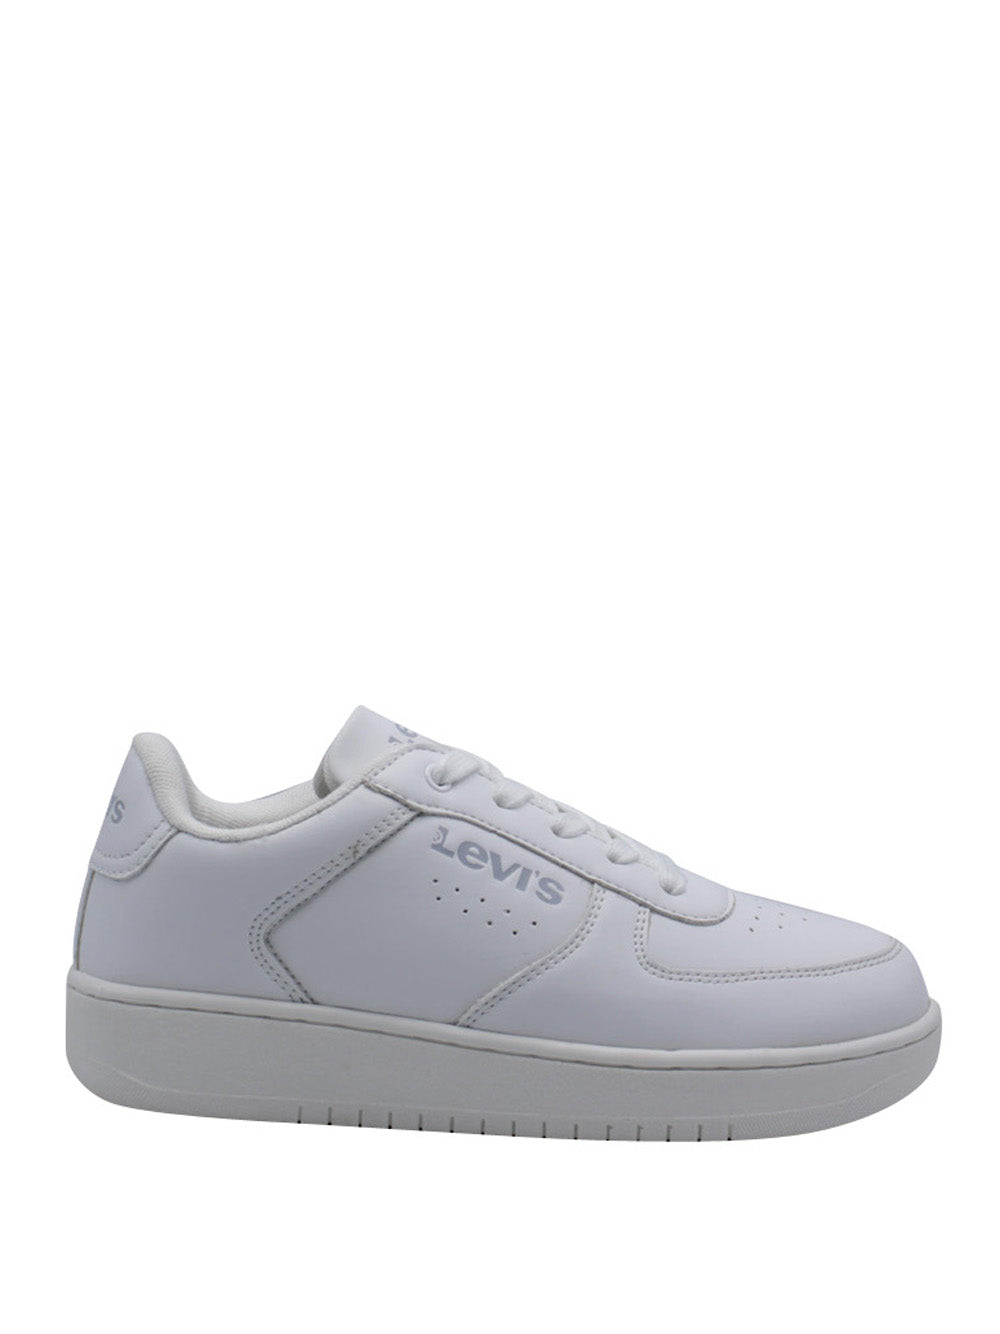 LEVI'S Sneakers Donna - Bianco modello VUNI0071S_J282